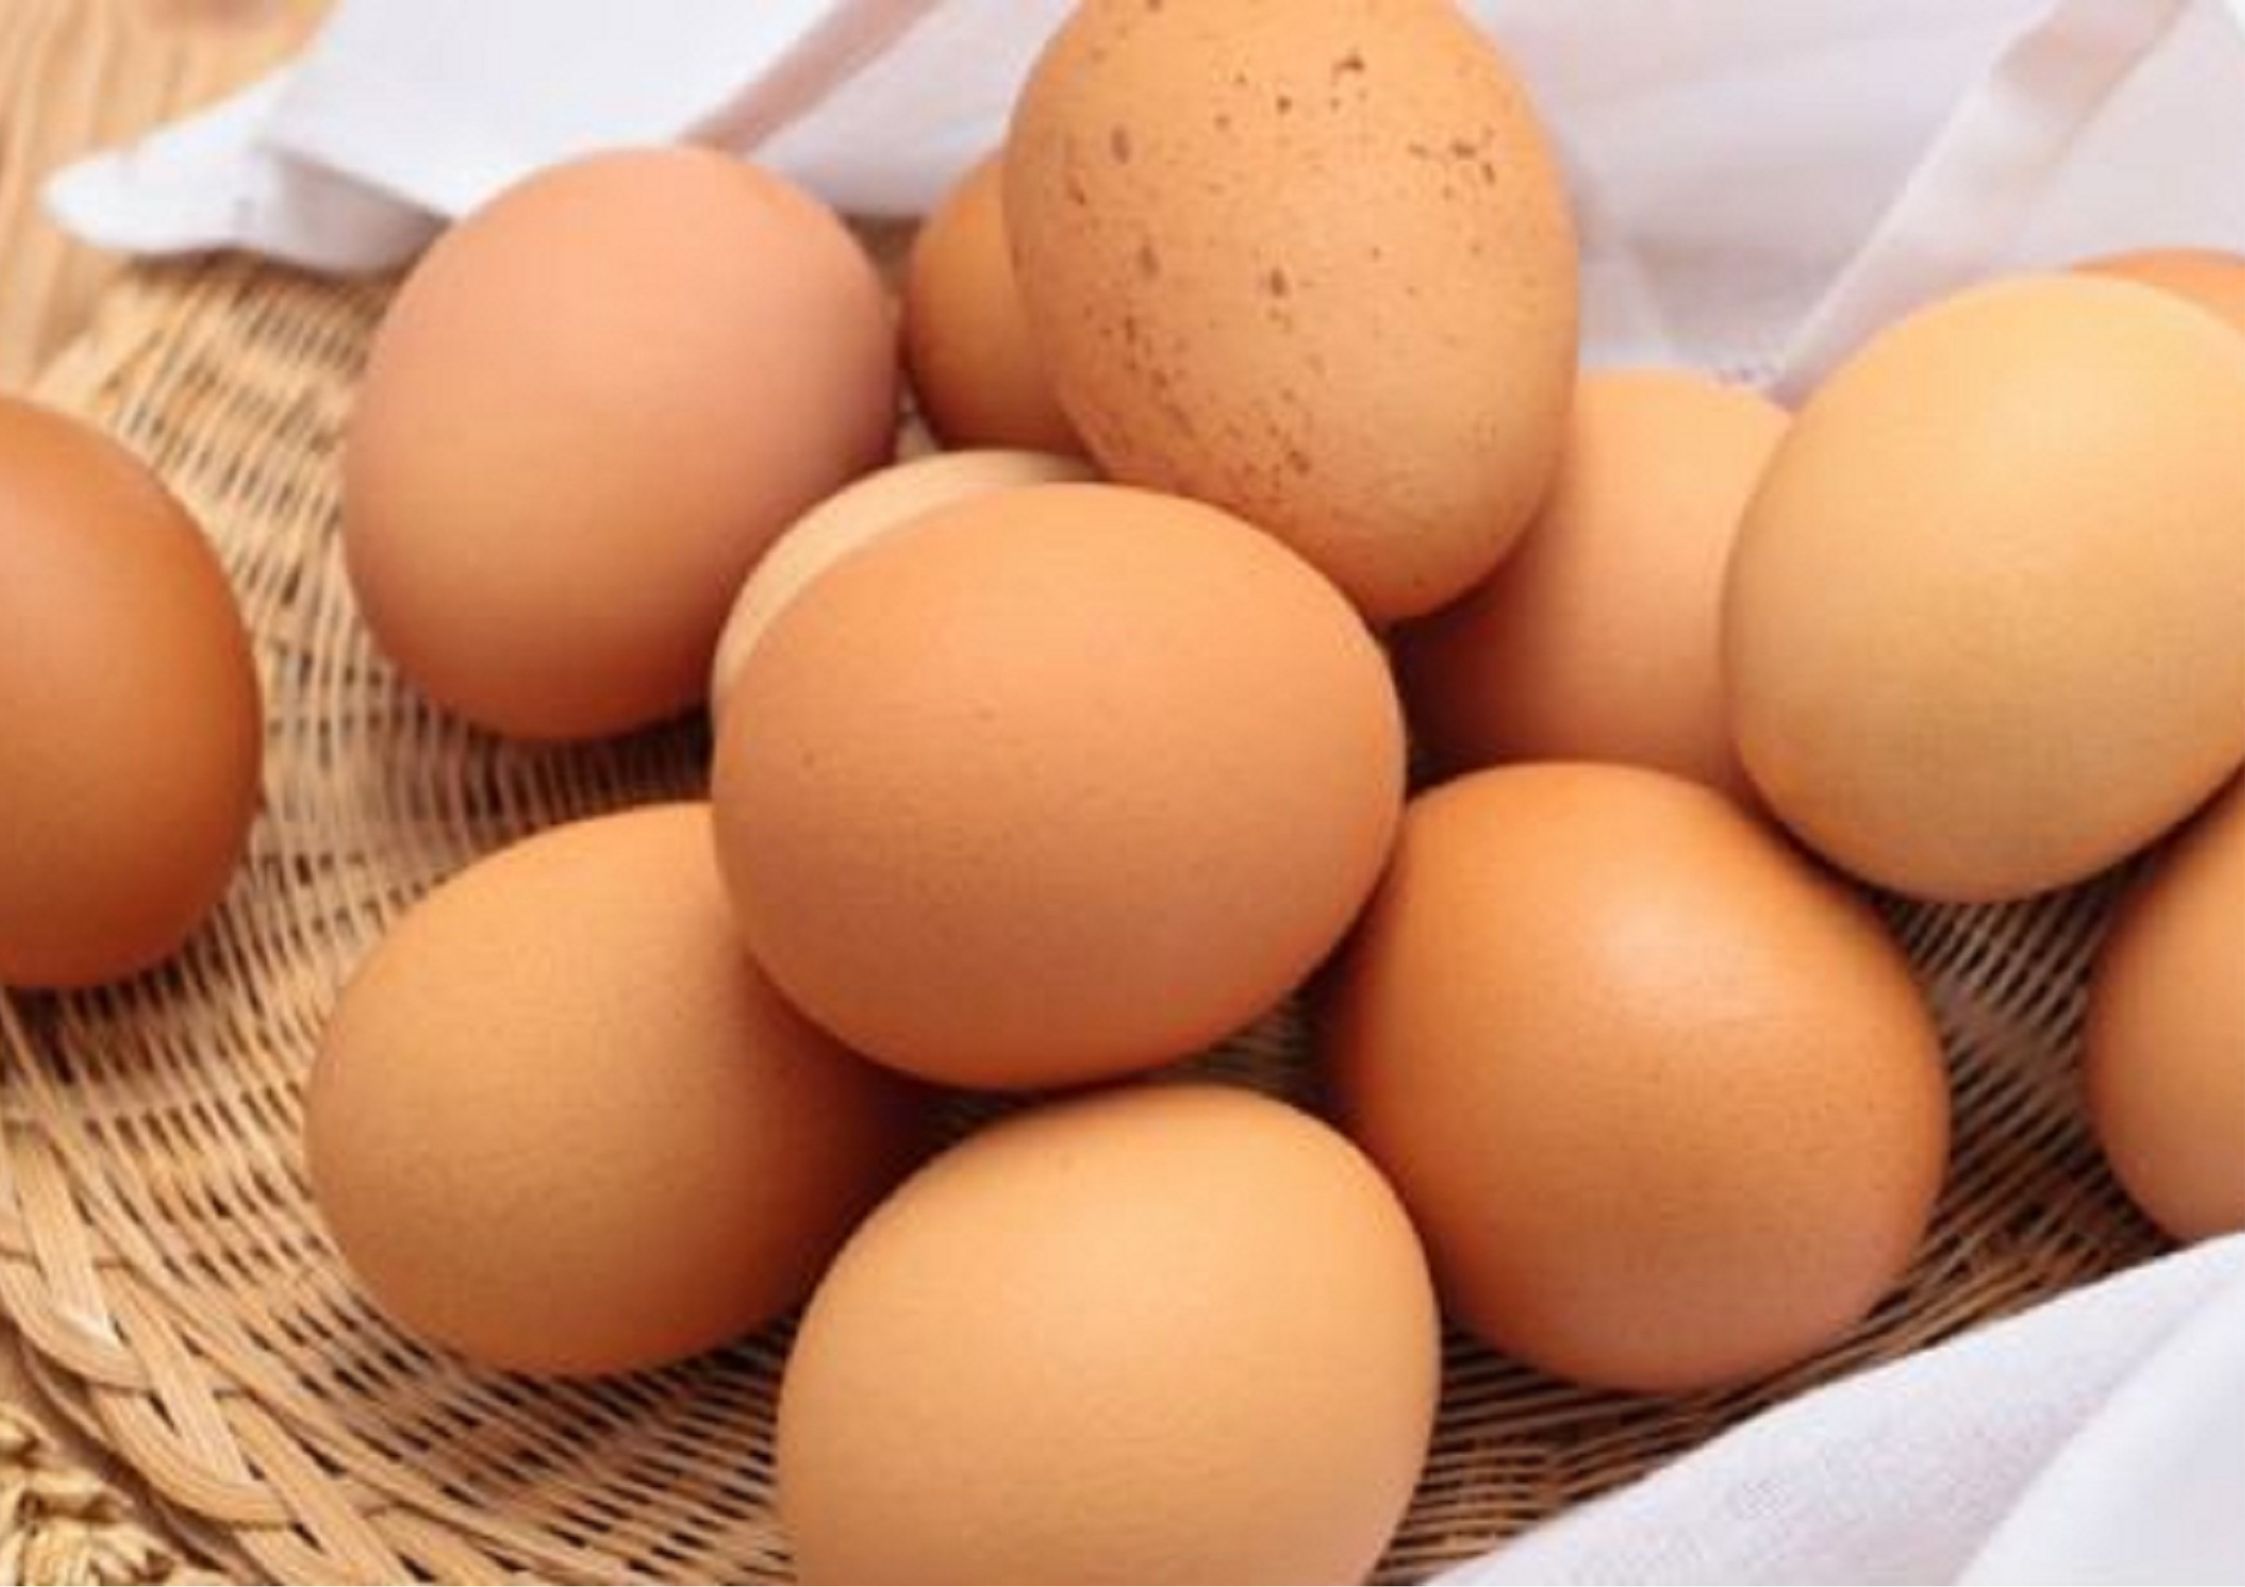 『卵』カロリー的にもコレステロール的にも積極的に摂るのがオススメです！page-visual 『卵』カロリー的にもコレステロール的にも積極的に摂るのがオススメです！ビジュアル